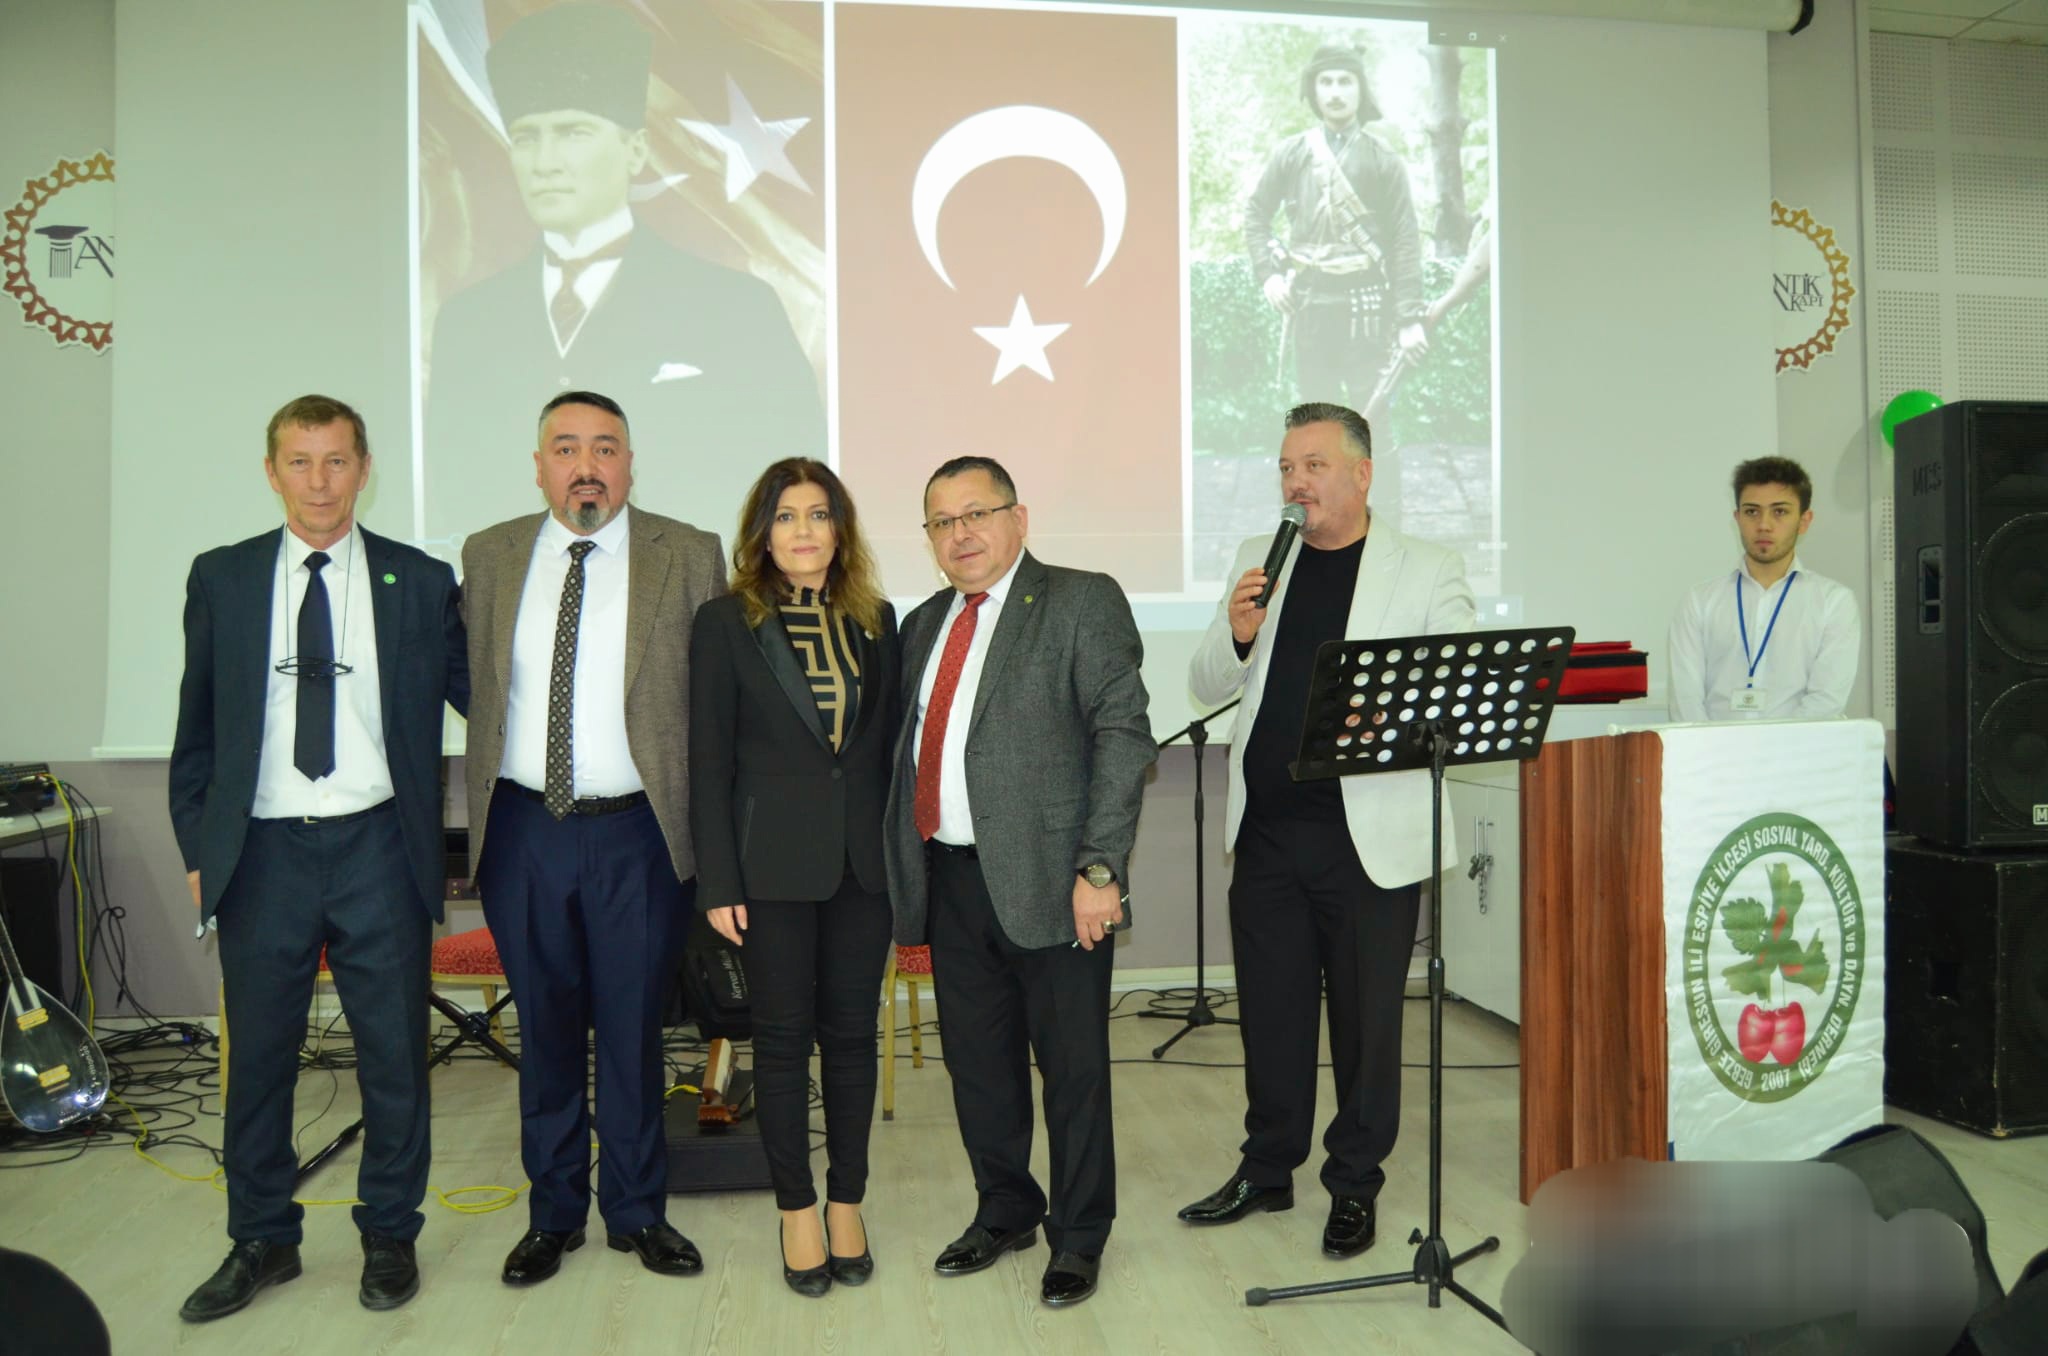 İl Başkanımız Serap Çakır, İl Başkan Yardımcılarımız ile Kocaeli Giresun Espiye ve Çevre Köyleri Derneği'nin düzenlediği birlik beraberlik gecesine katıldık.